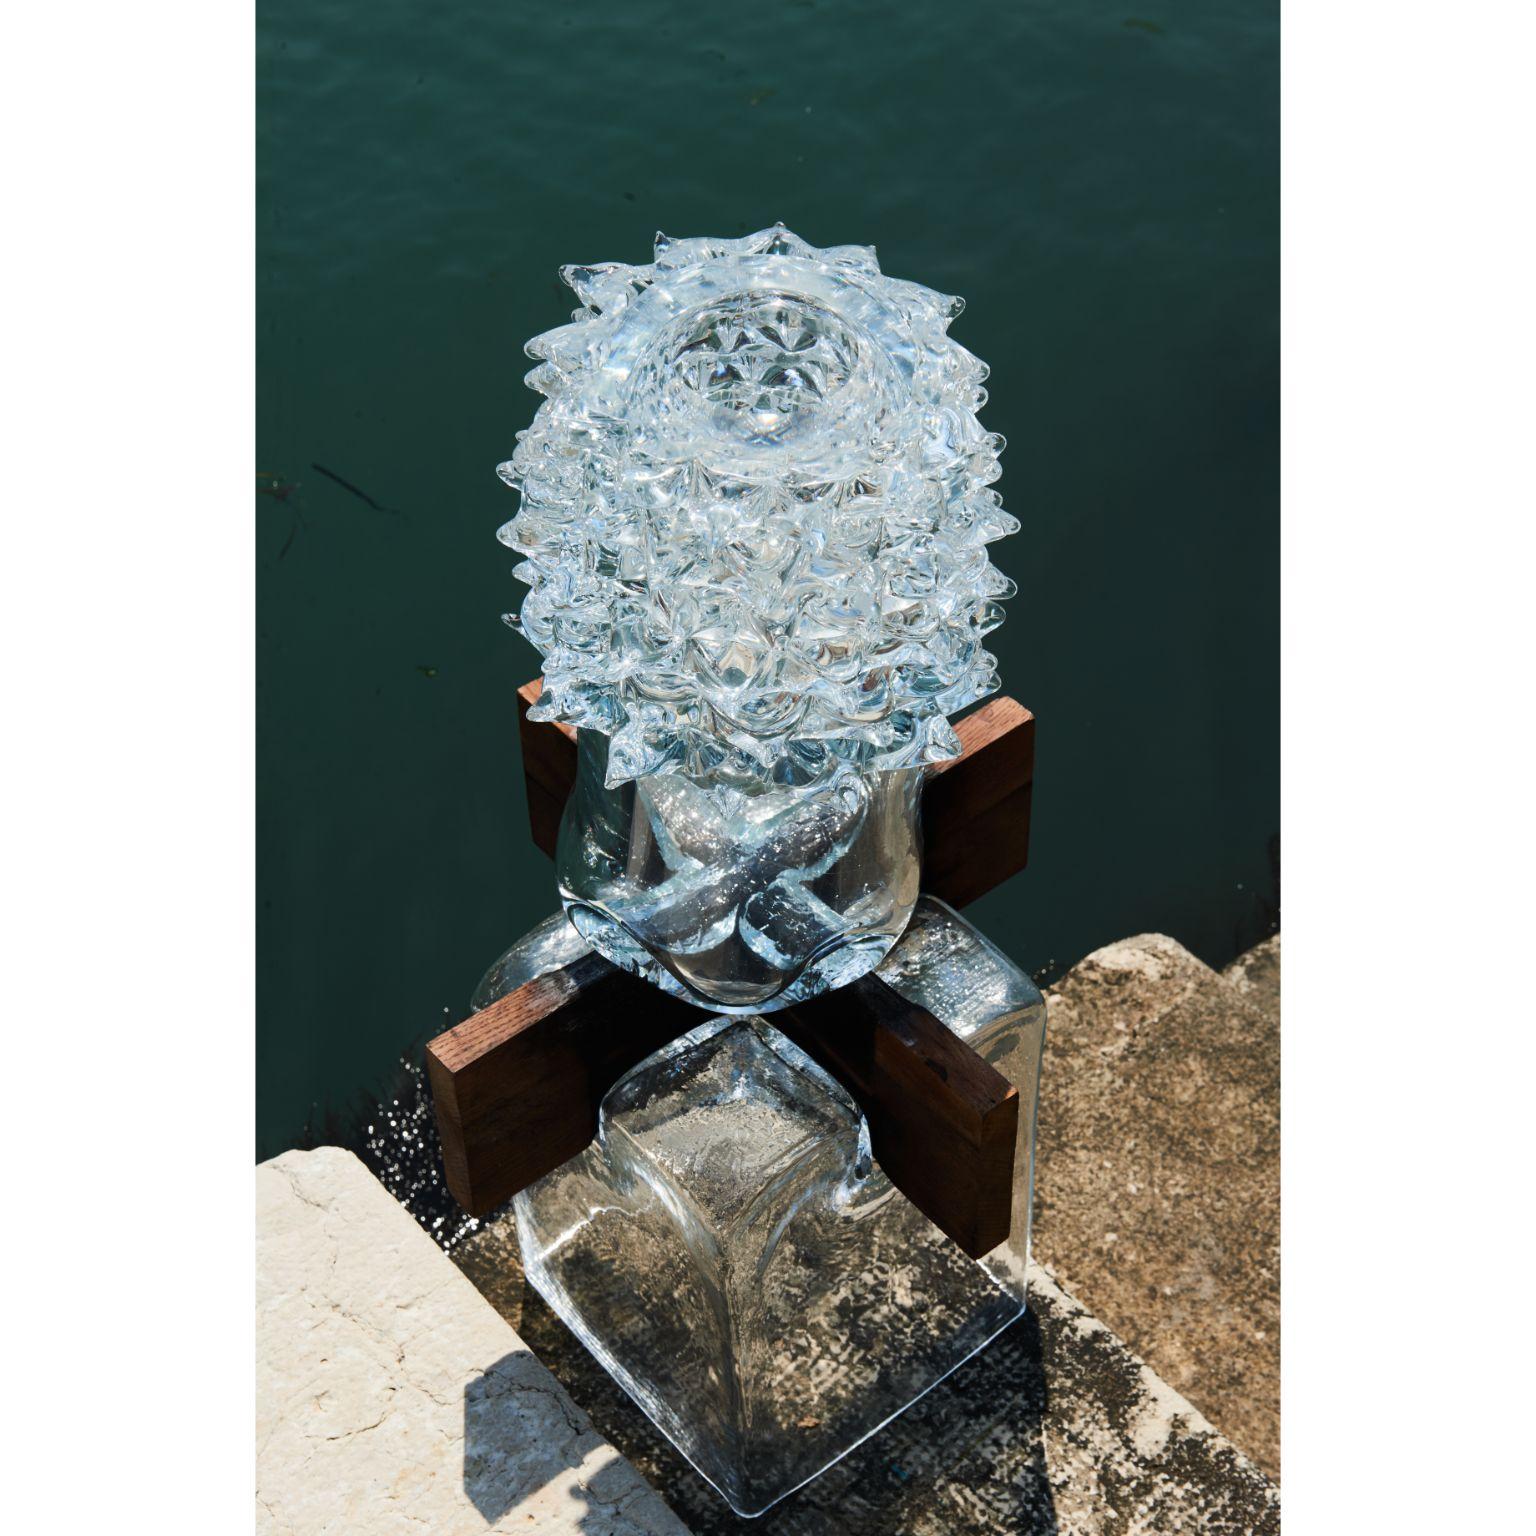 Vase de la collection Venise d'Alexey Drozhdin
Dimensions : D 25 x L 25 x H 72 cm. 
Matériaux : verre, chêne forme.

Le jeune designer et artiste Alexey Drozhdin crée d'extraordinaires objets décoratifs en verre. Le designer est devenu finaliste du